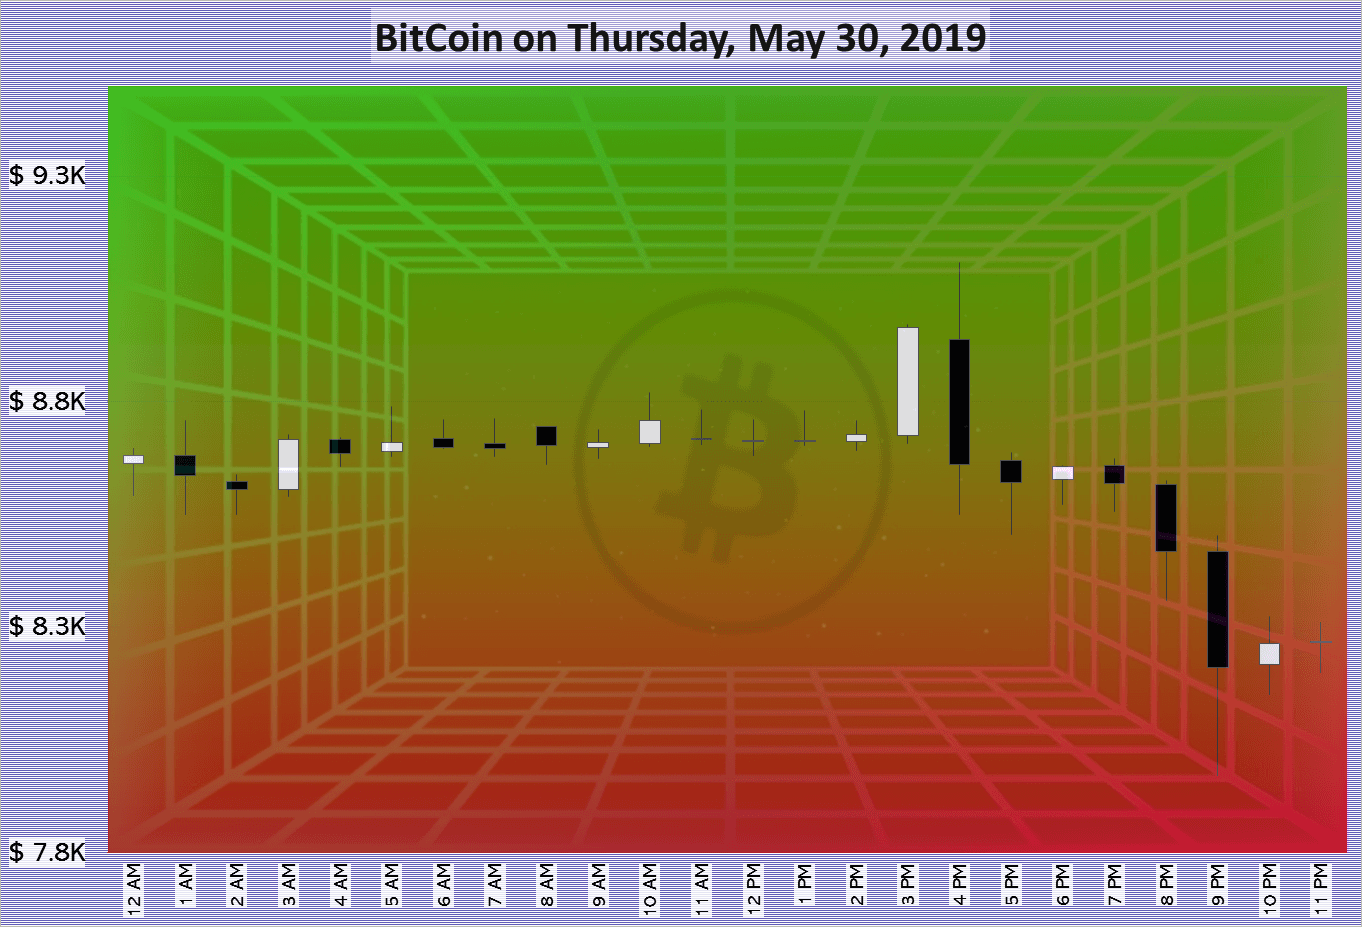 BitCoin on Thursday, May 30, 2019